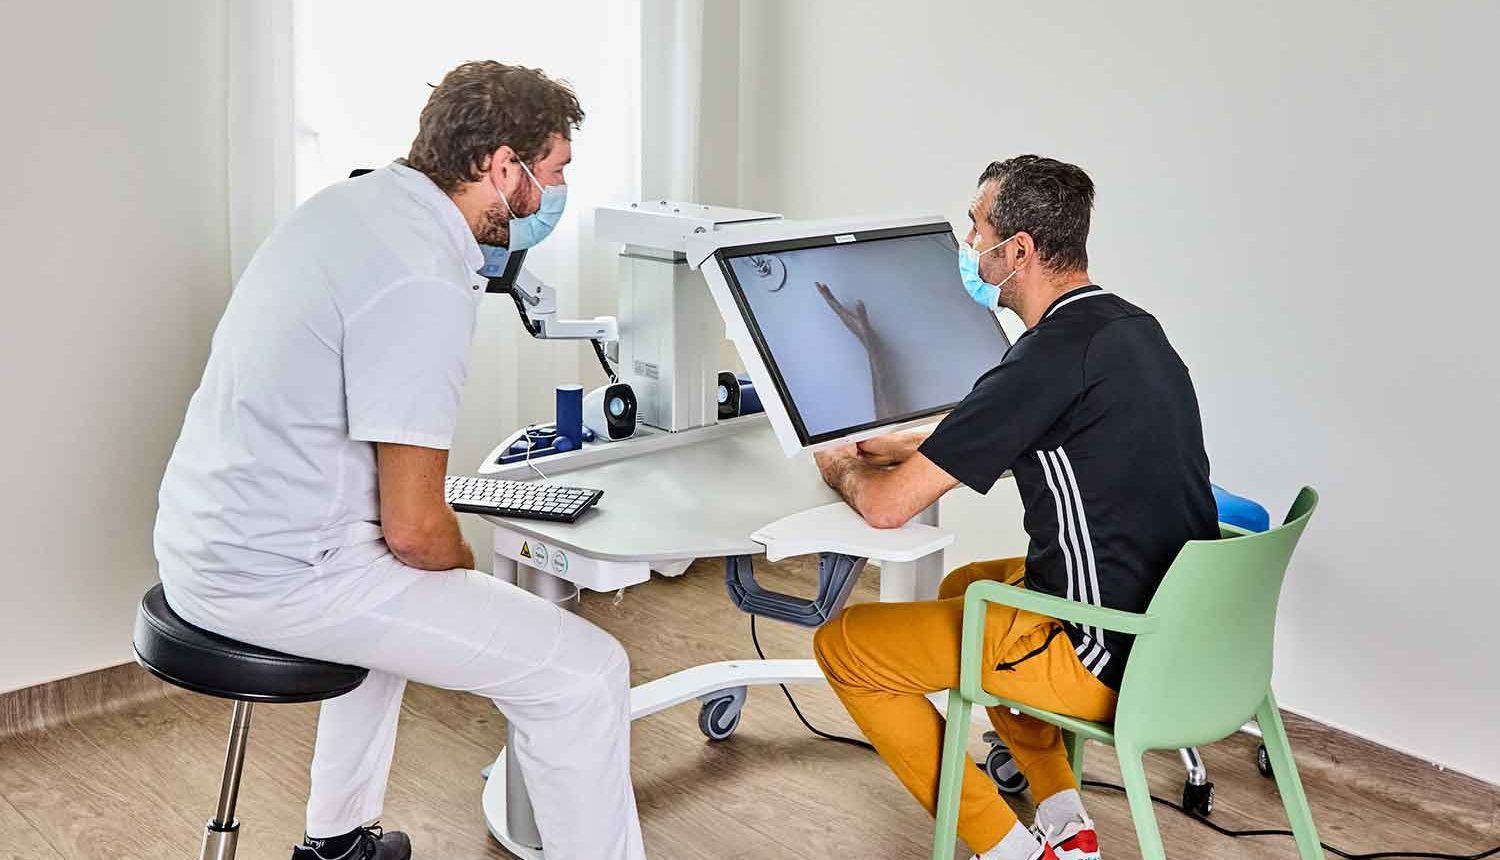 Infirmier guidant son patient en tenue de sport sur une machine médicale